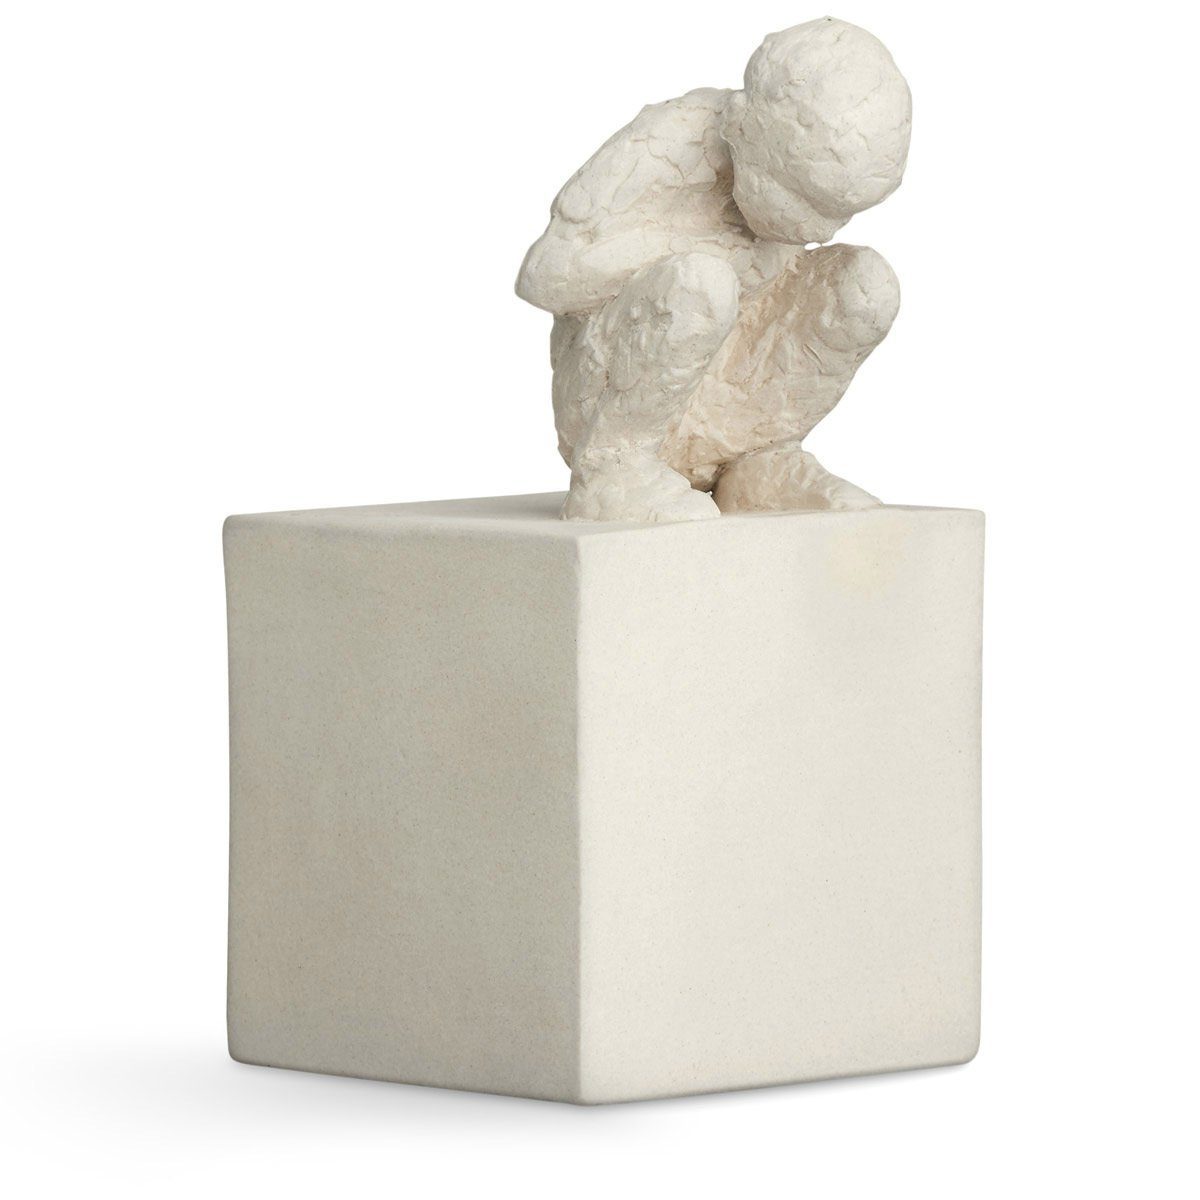 Kähler Dekofigur von Skulptur Serie Malene Bjelke aus Bildhauerin The der Curious 'Character' (Der Neugierige); One Keramik